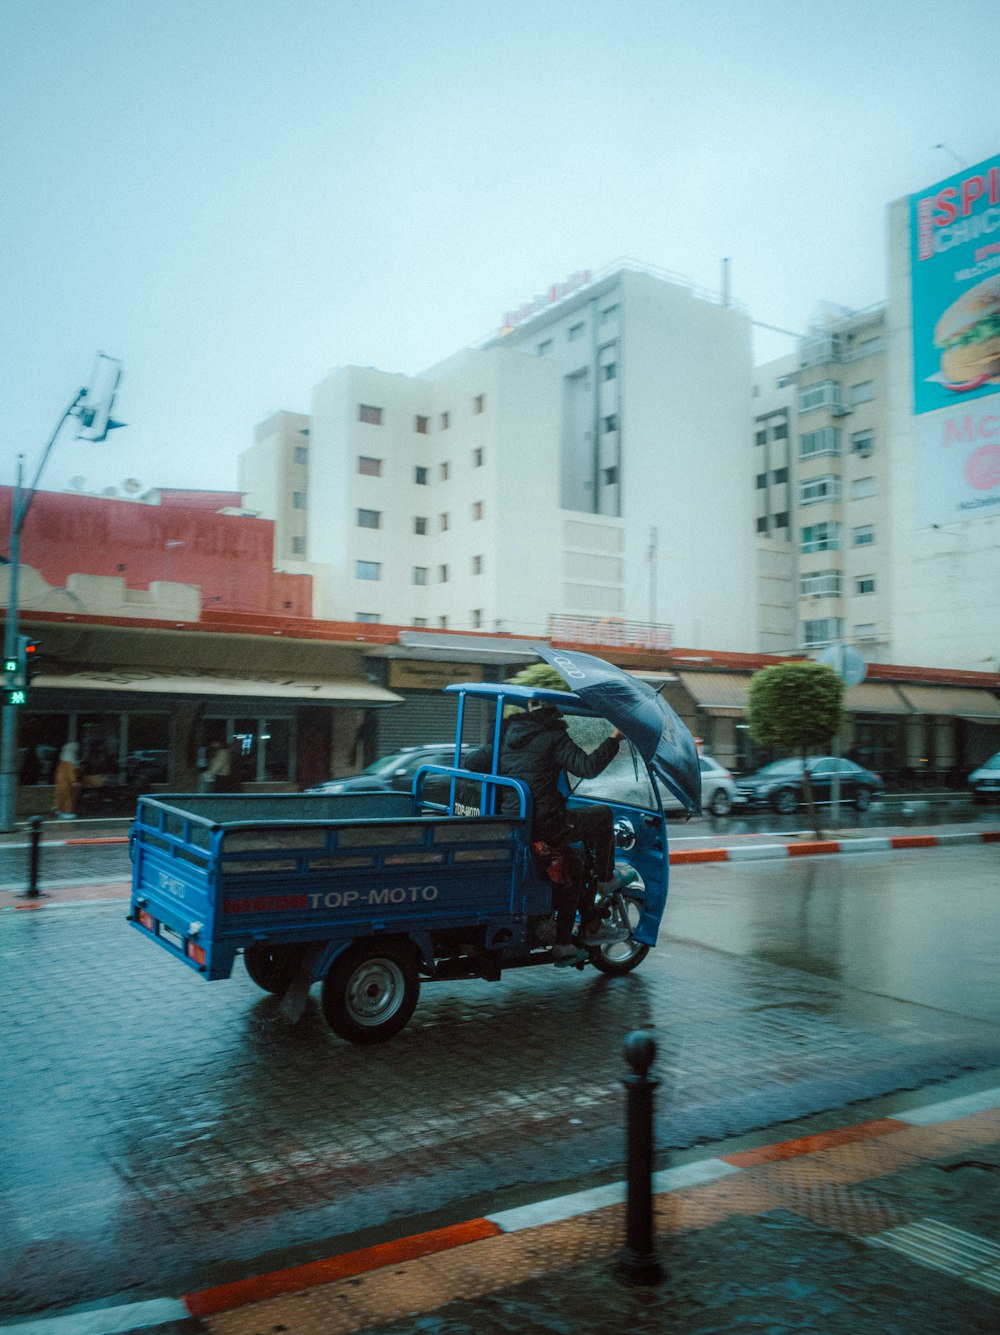 Foto Uma pessoa andando de moto com um guarda-chuva em uma rua – Imagem de  Camião grátis no Unsplash